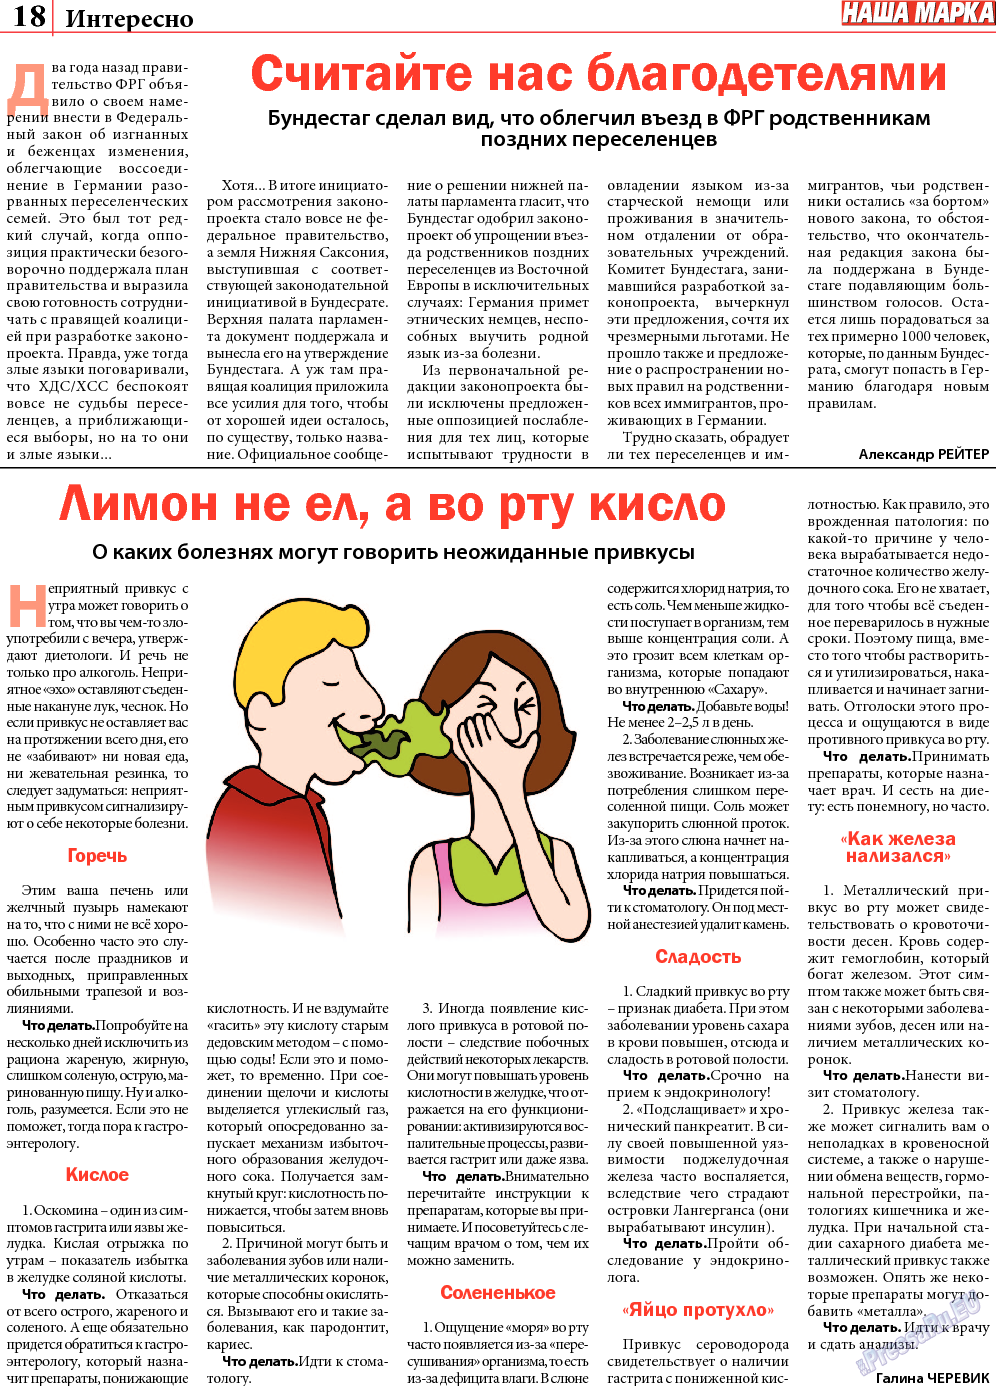 Наша марка (газета). 2013 год, номер 8, стр. 18